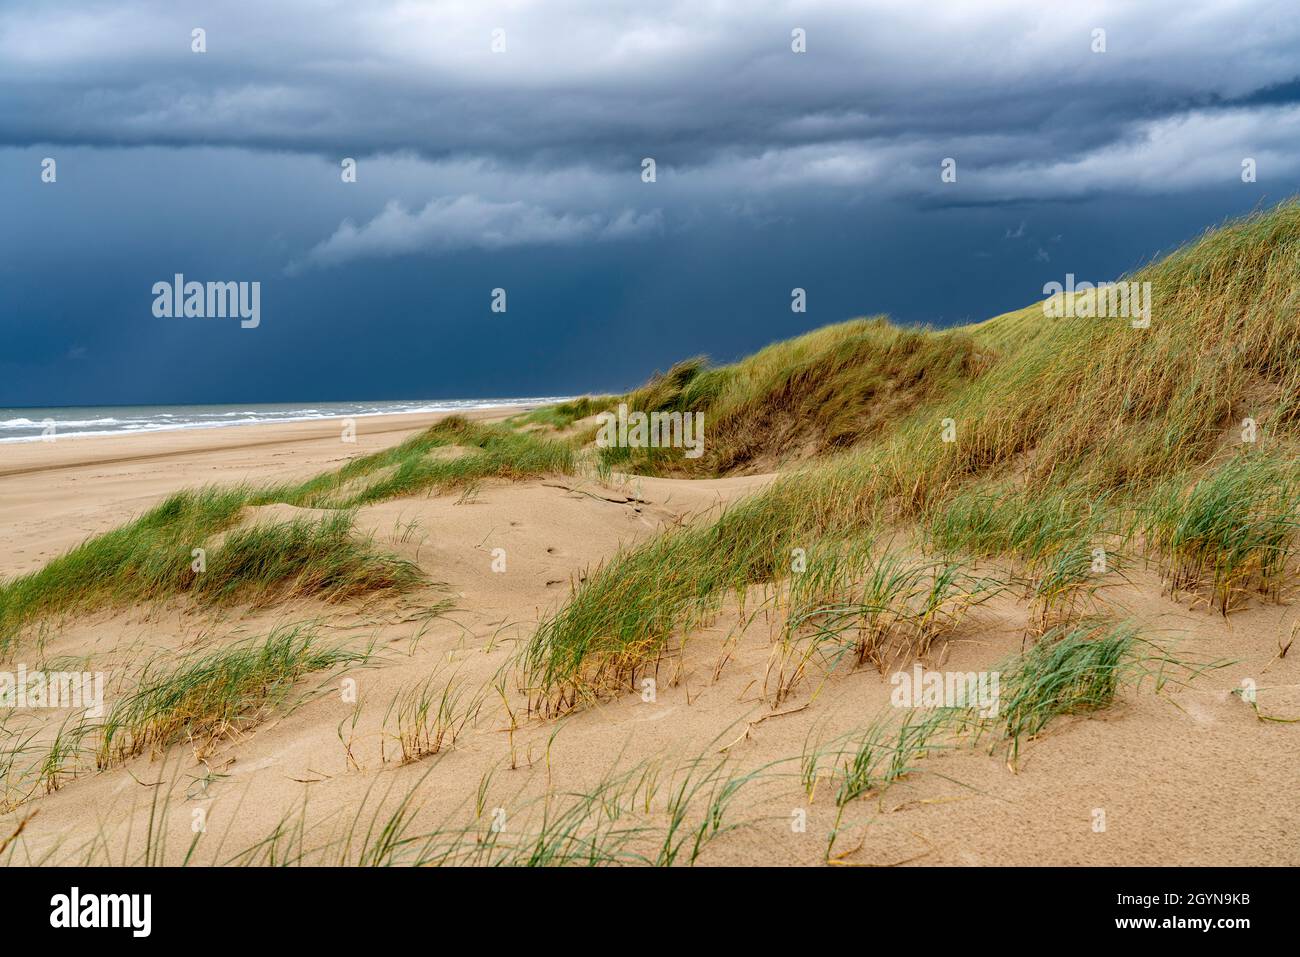 Paesaggio delle dune, spiaggia, nuvole di tempesta scura, autunno sul Mare del Nord in Olanda del Nord, tra le città di Egmond aan Zee e Bergen aan Zee, Paesi Bassi Foto Stock